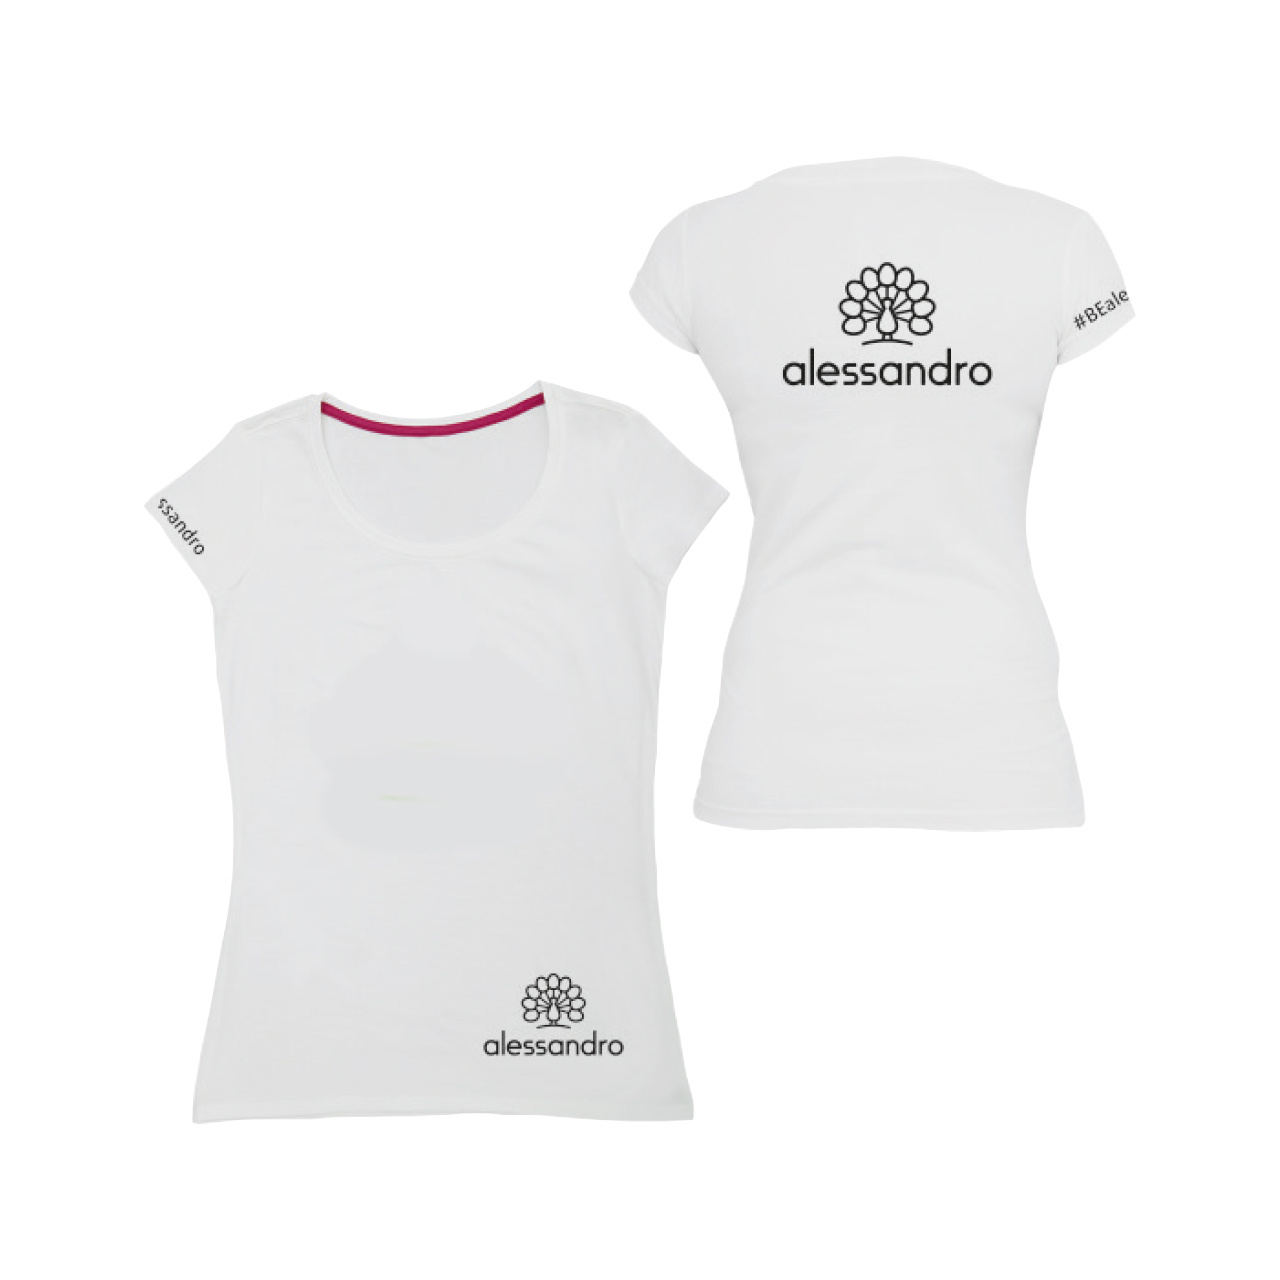 T-shirt met Alessandro Logo Gr. XL